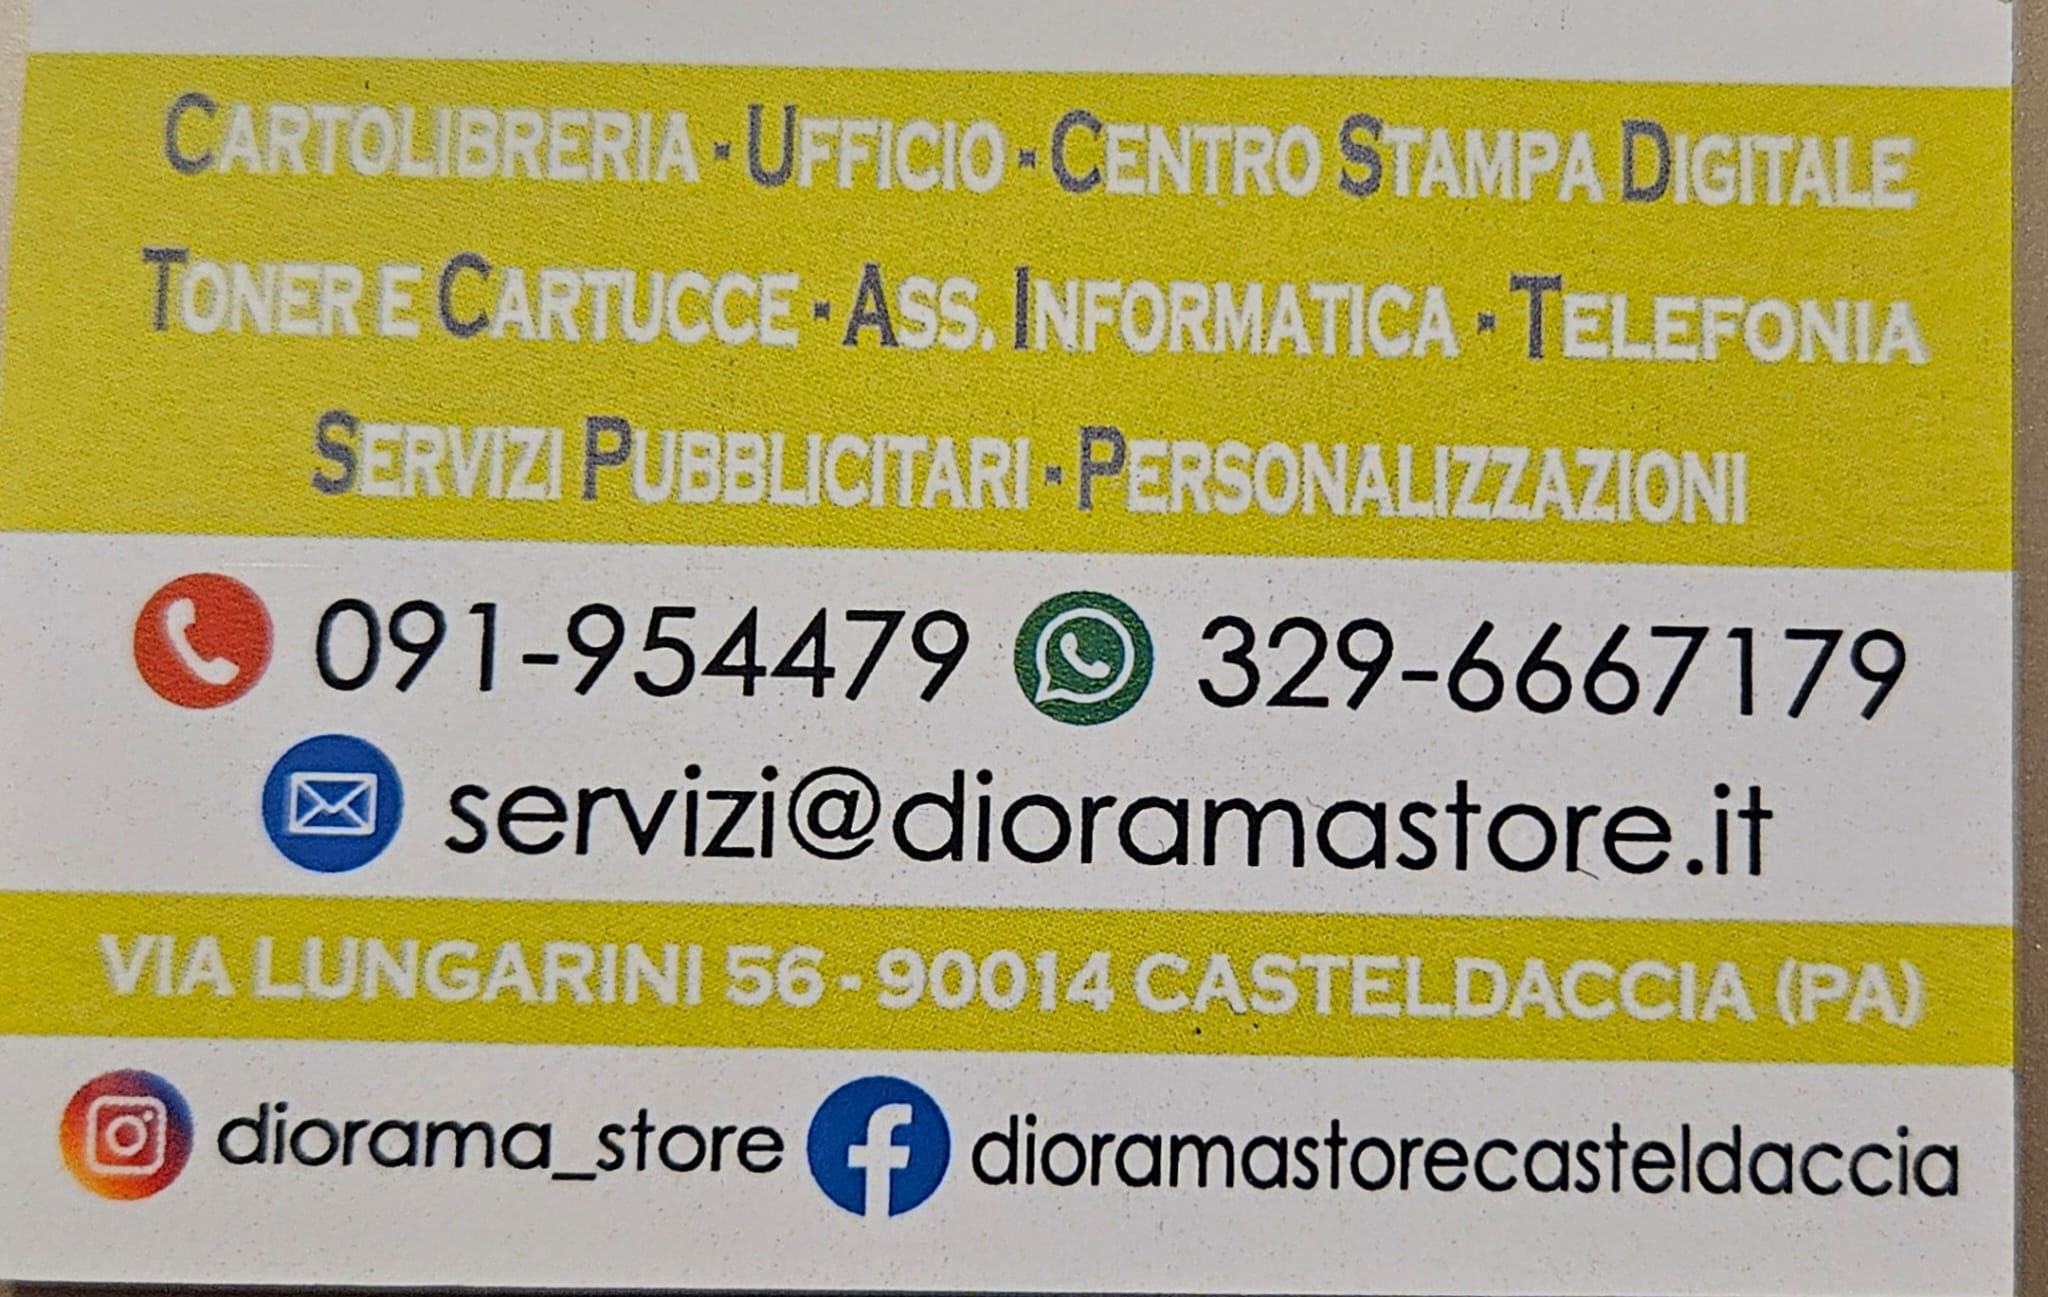 Diorama Store